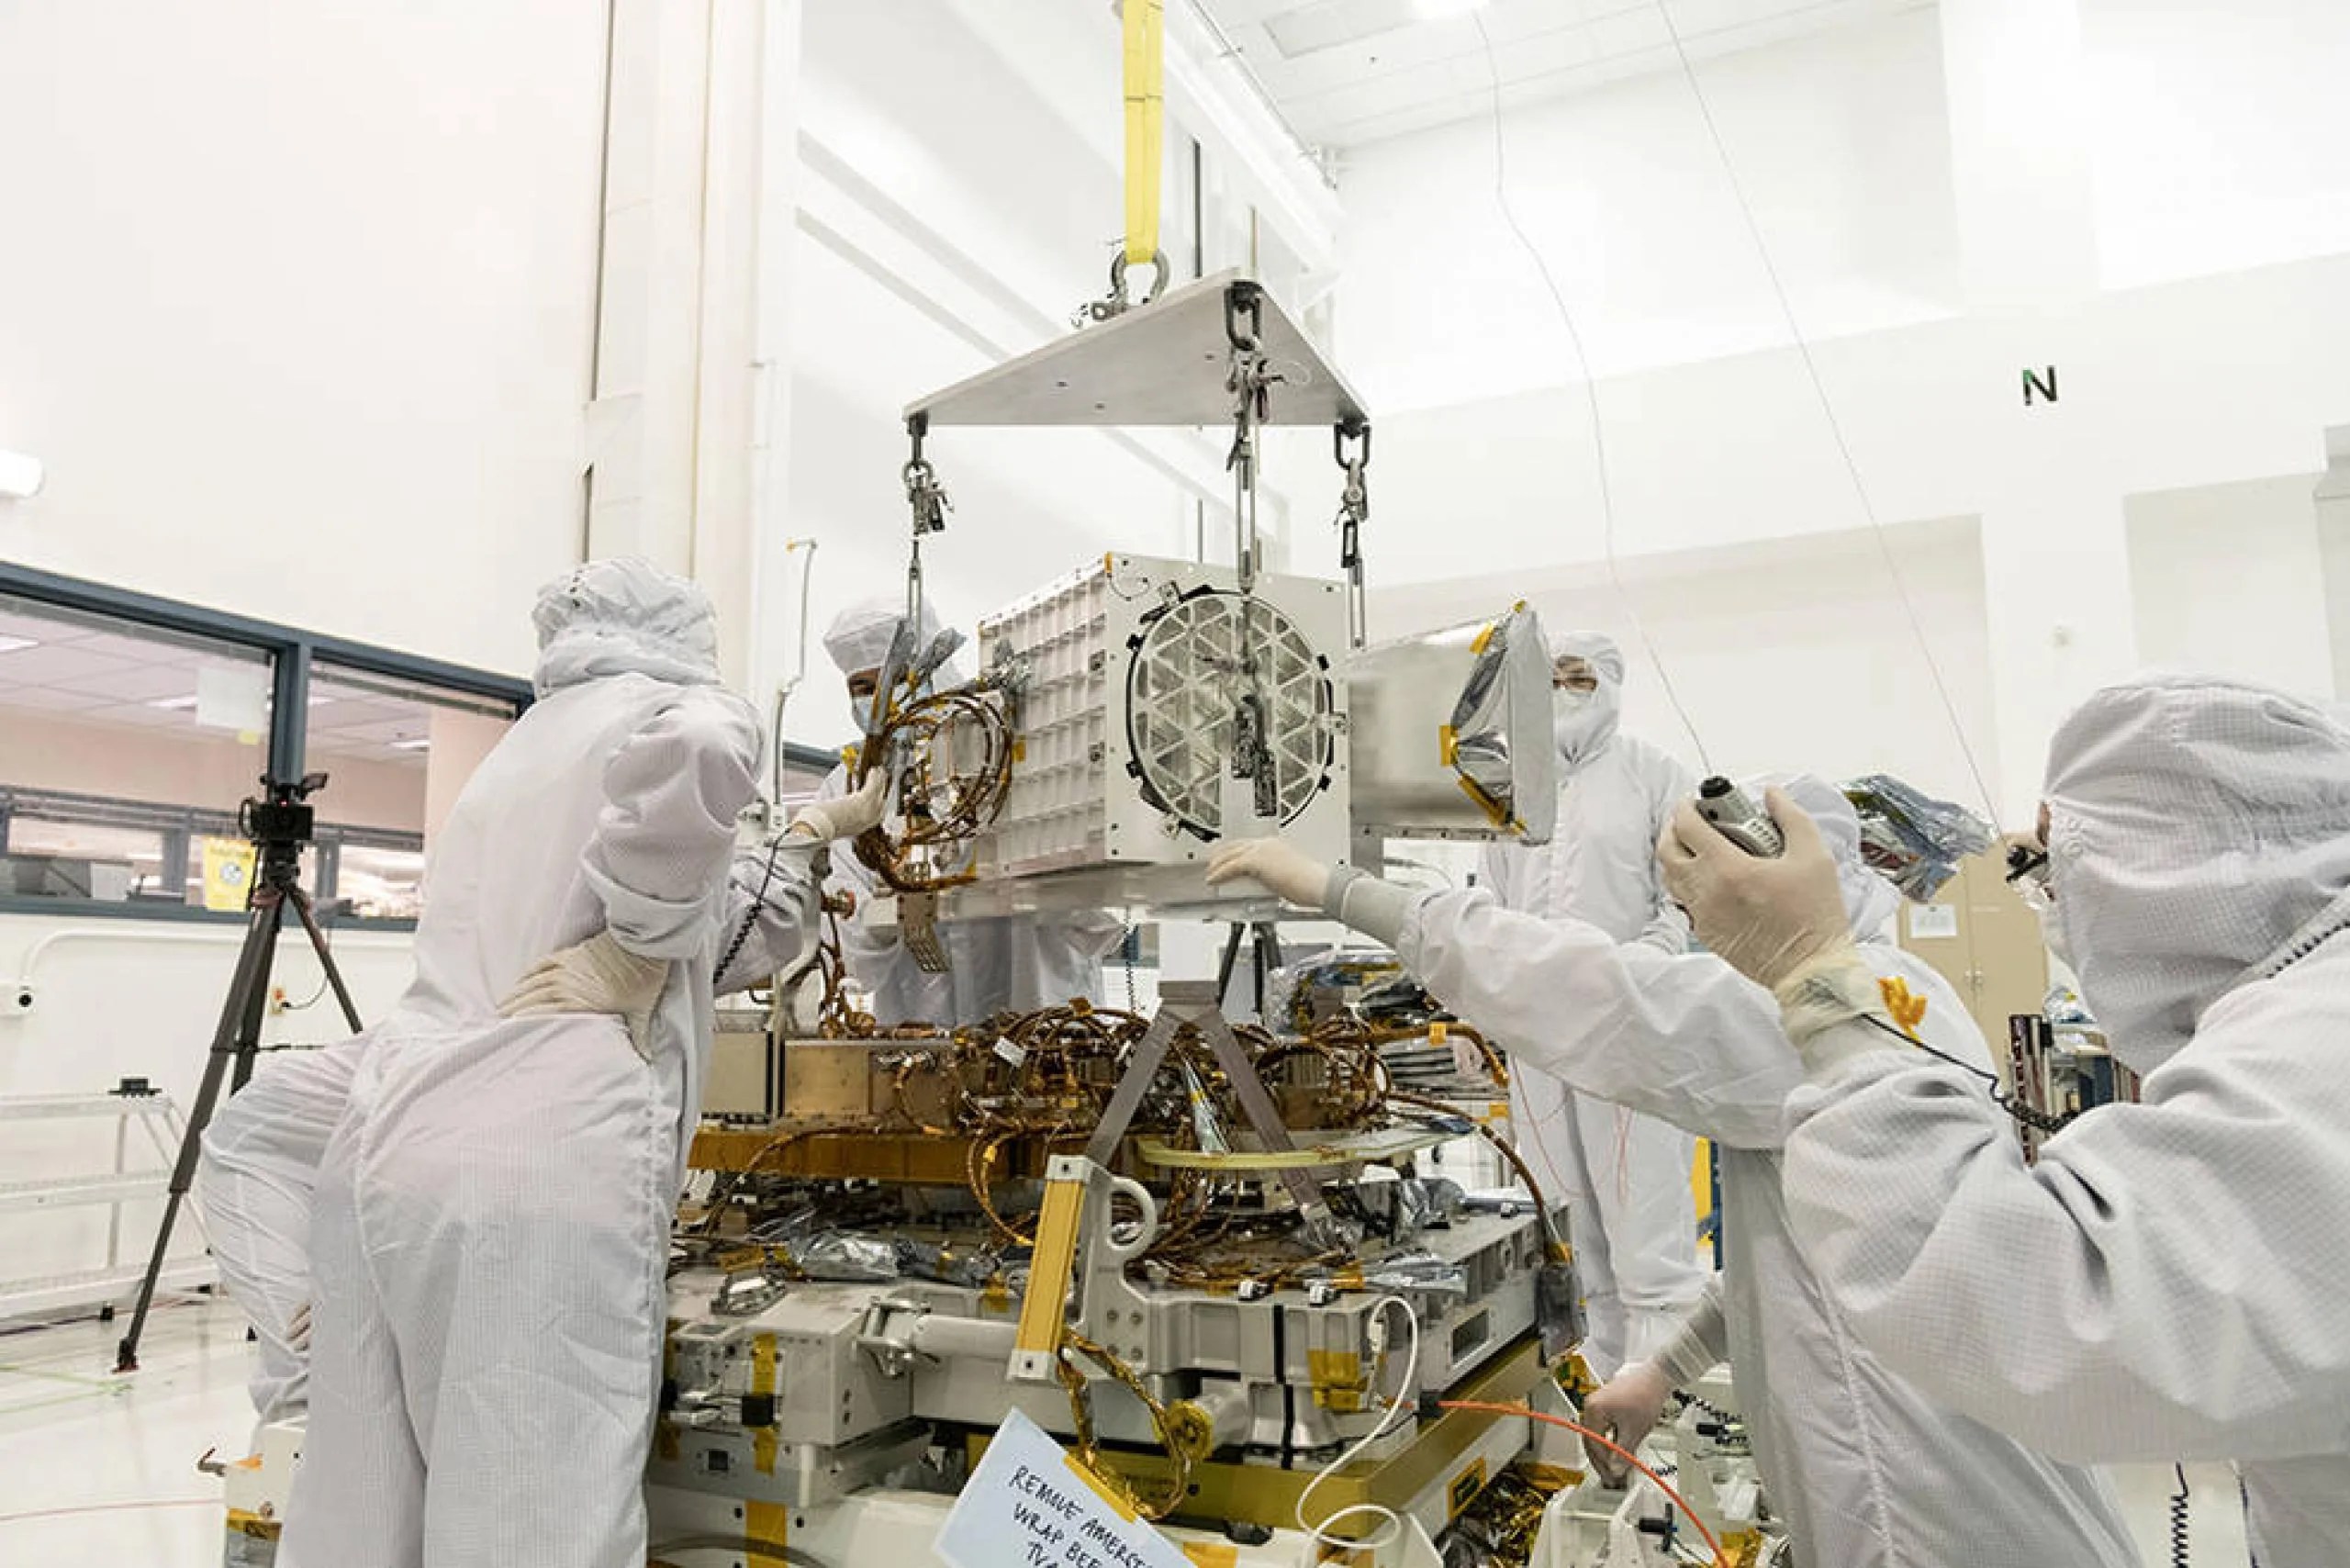 Ingenieros y técnicos de JPL ensamblan los componentes de EMIT, incluyendo su telescopio, su espectrómetro de imágenes y su placa base, que contiene sus partes electrónicas. Créditos: NASA/JPL-Caltech